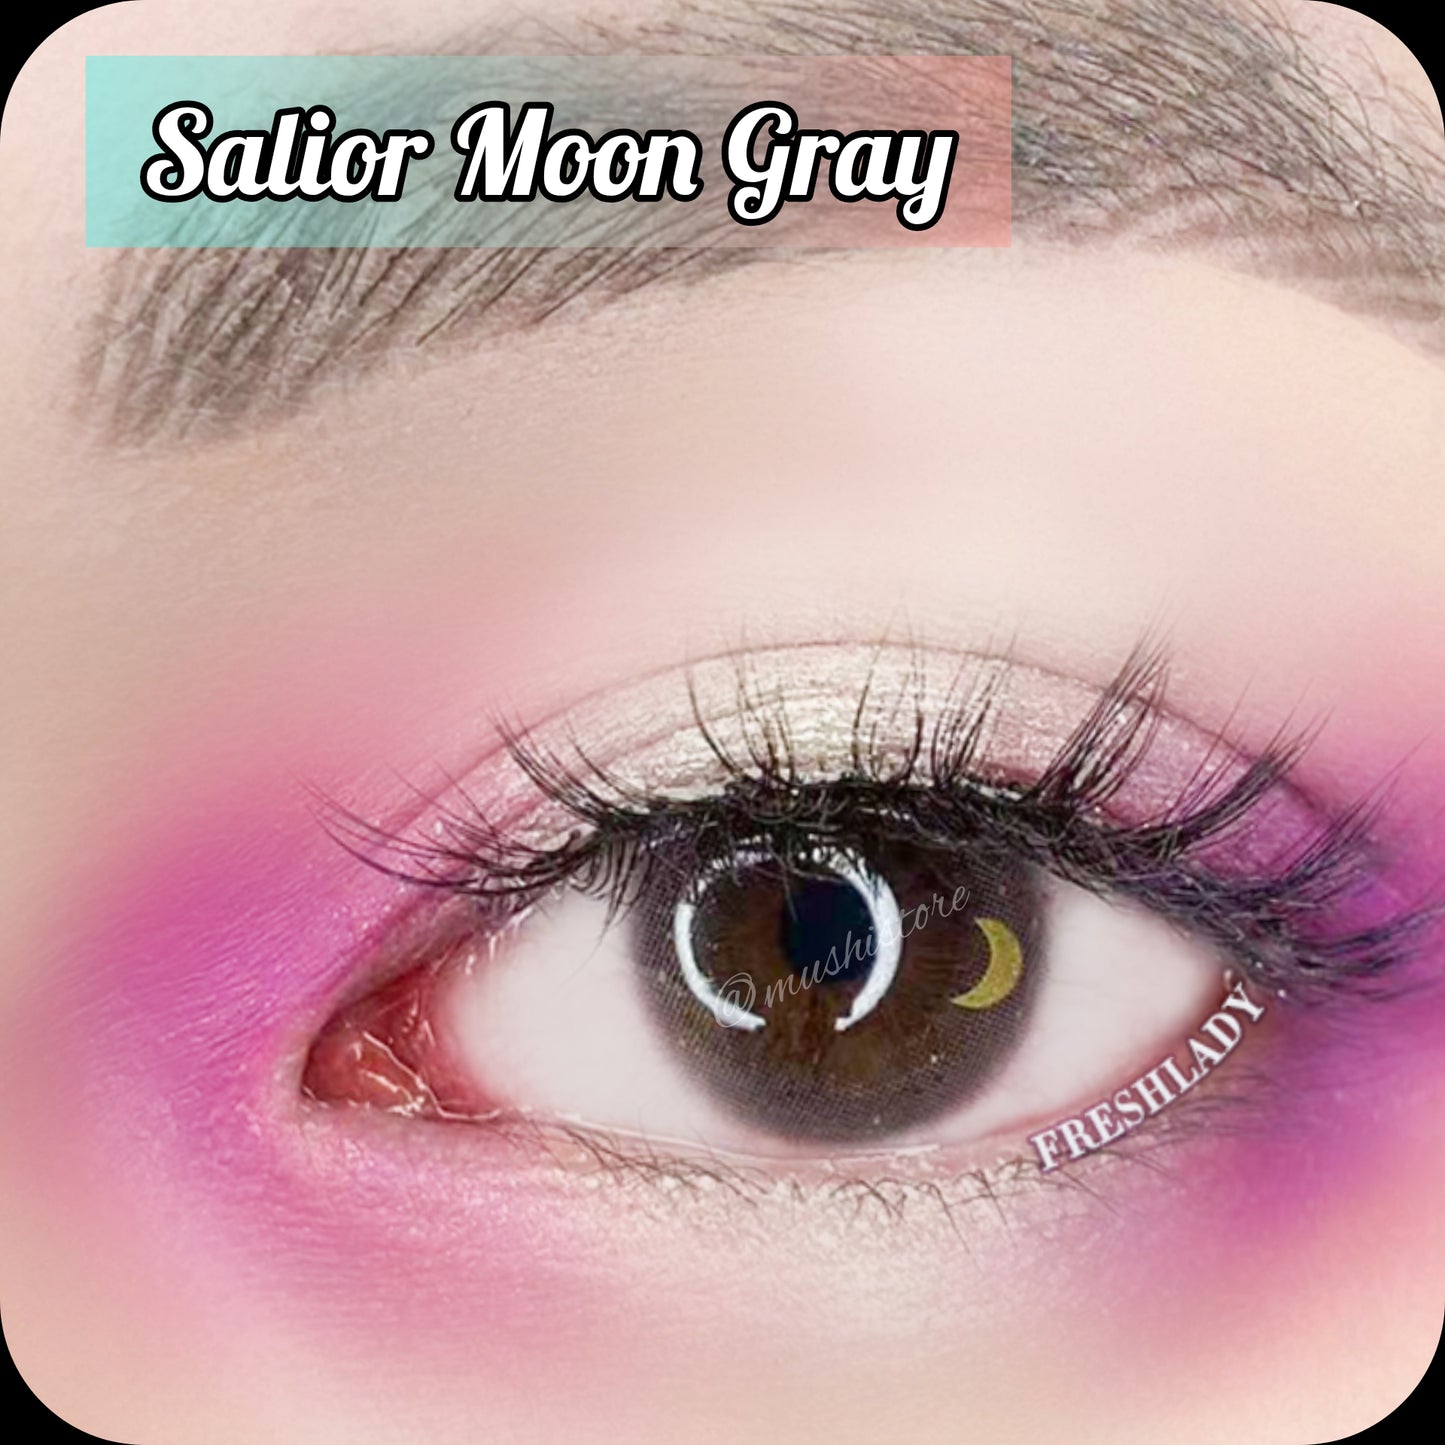 Sailor Moon Gray